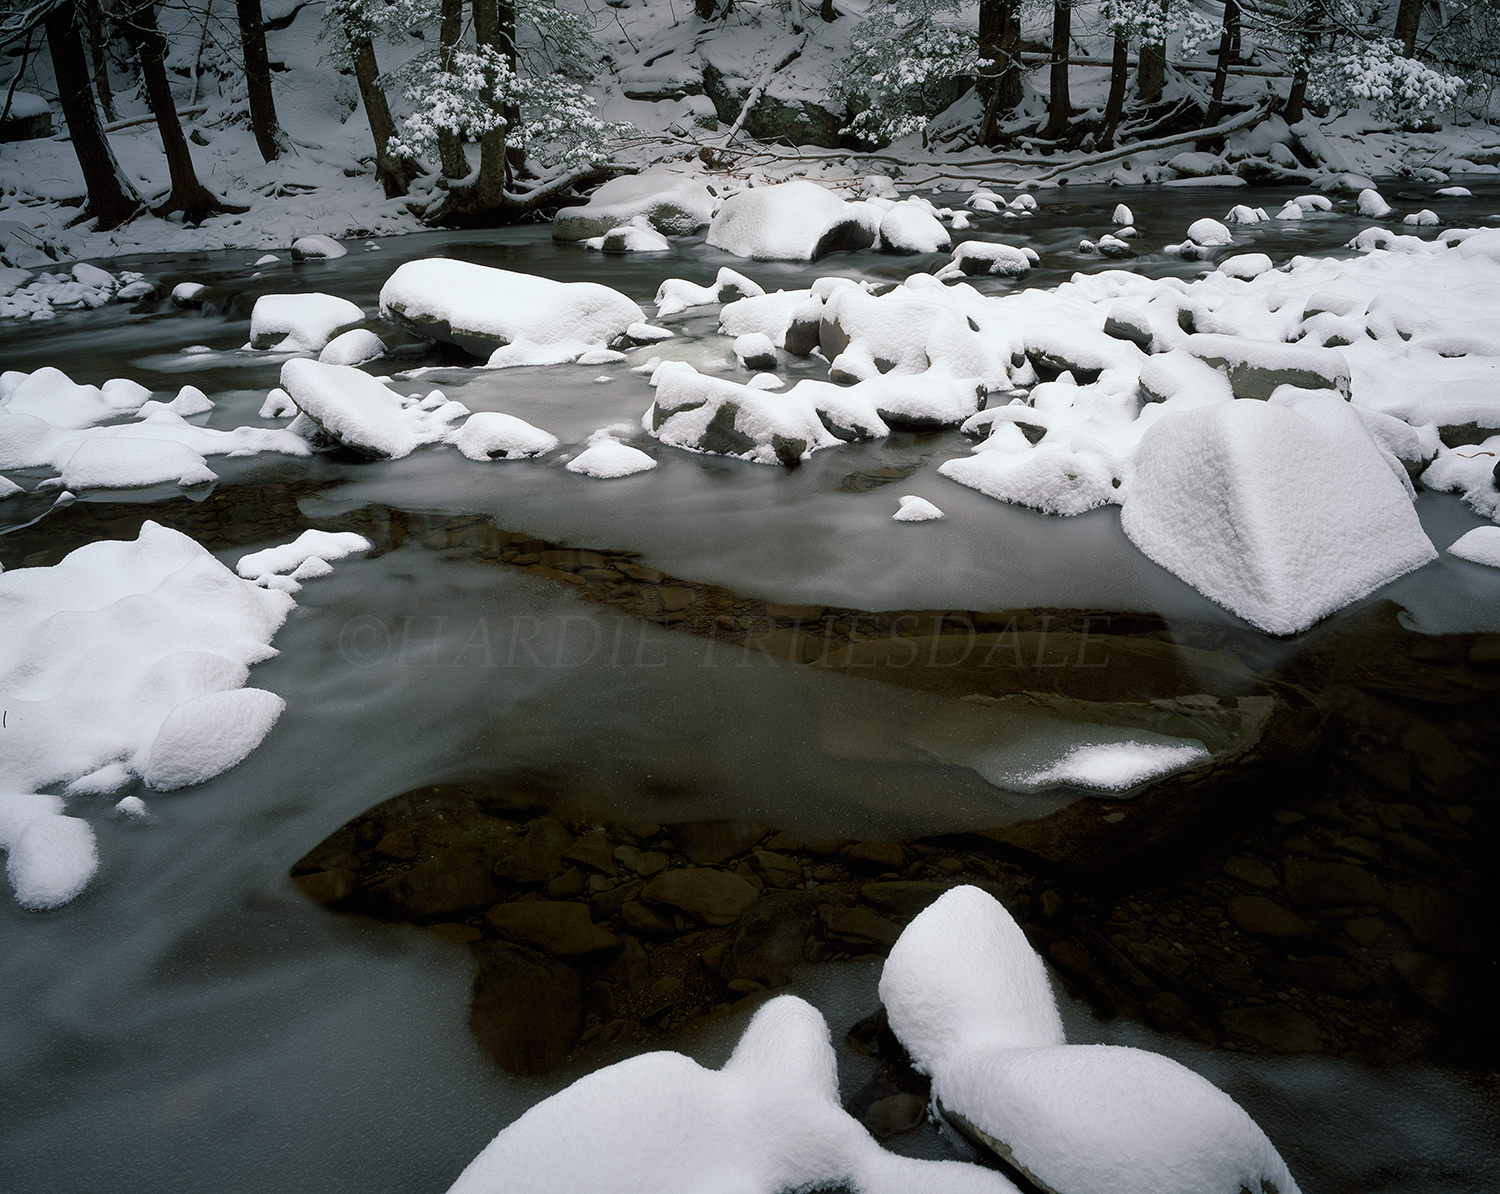  Cks#189 "Winter, Katerskill Creek" 